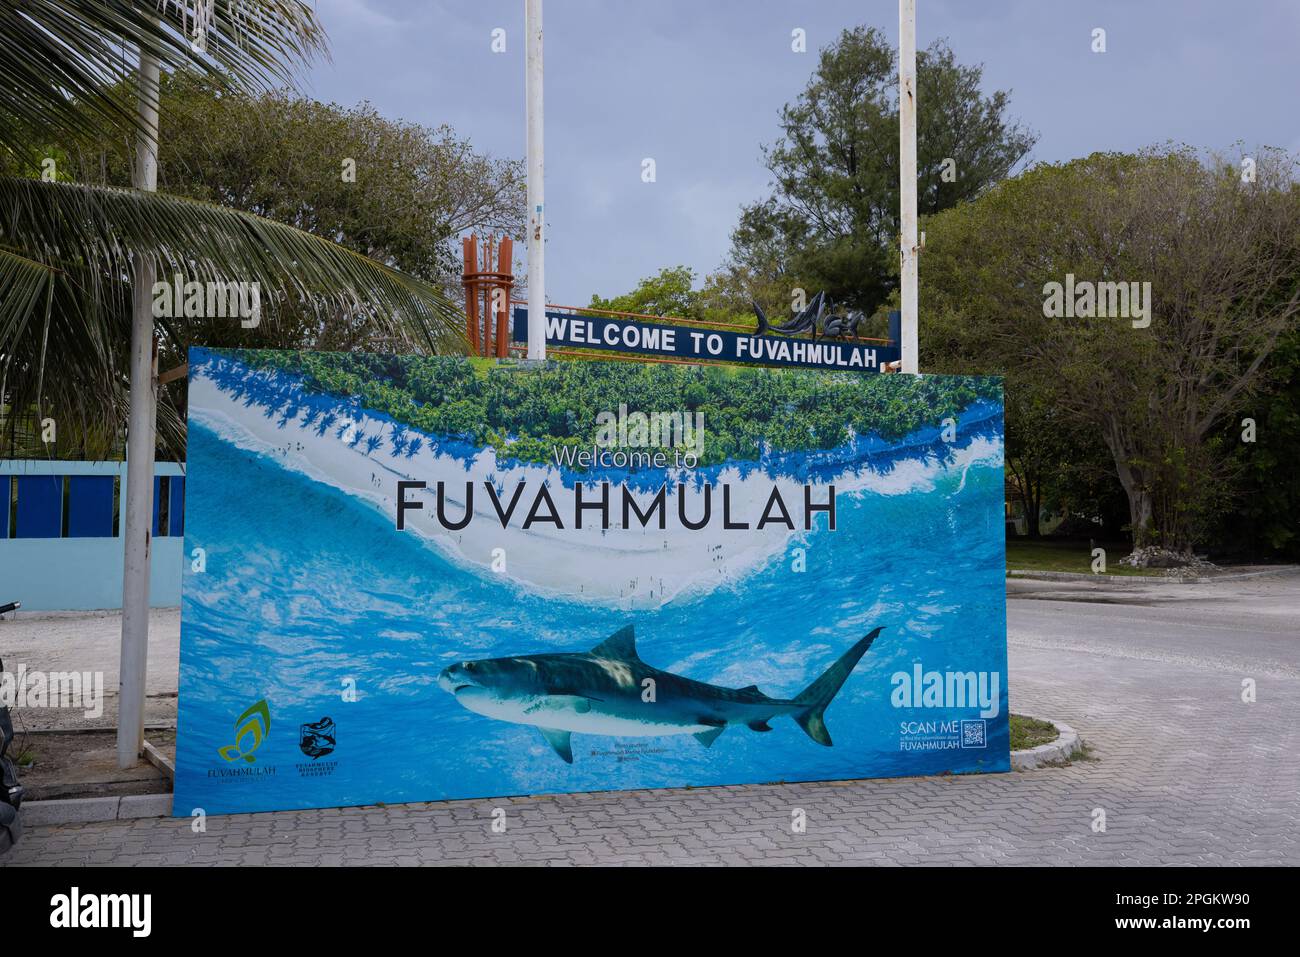 Isola di Fuvahmulah (Maldive -- Una guardia all'entrata della strada che mostra il nome dell'isola e delle sue specie iconiche - squali tigre Foto Stock